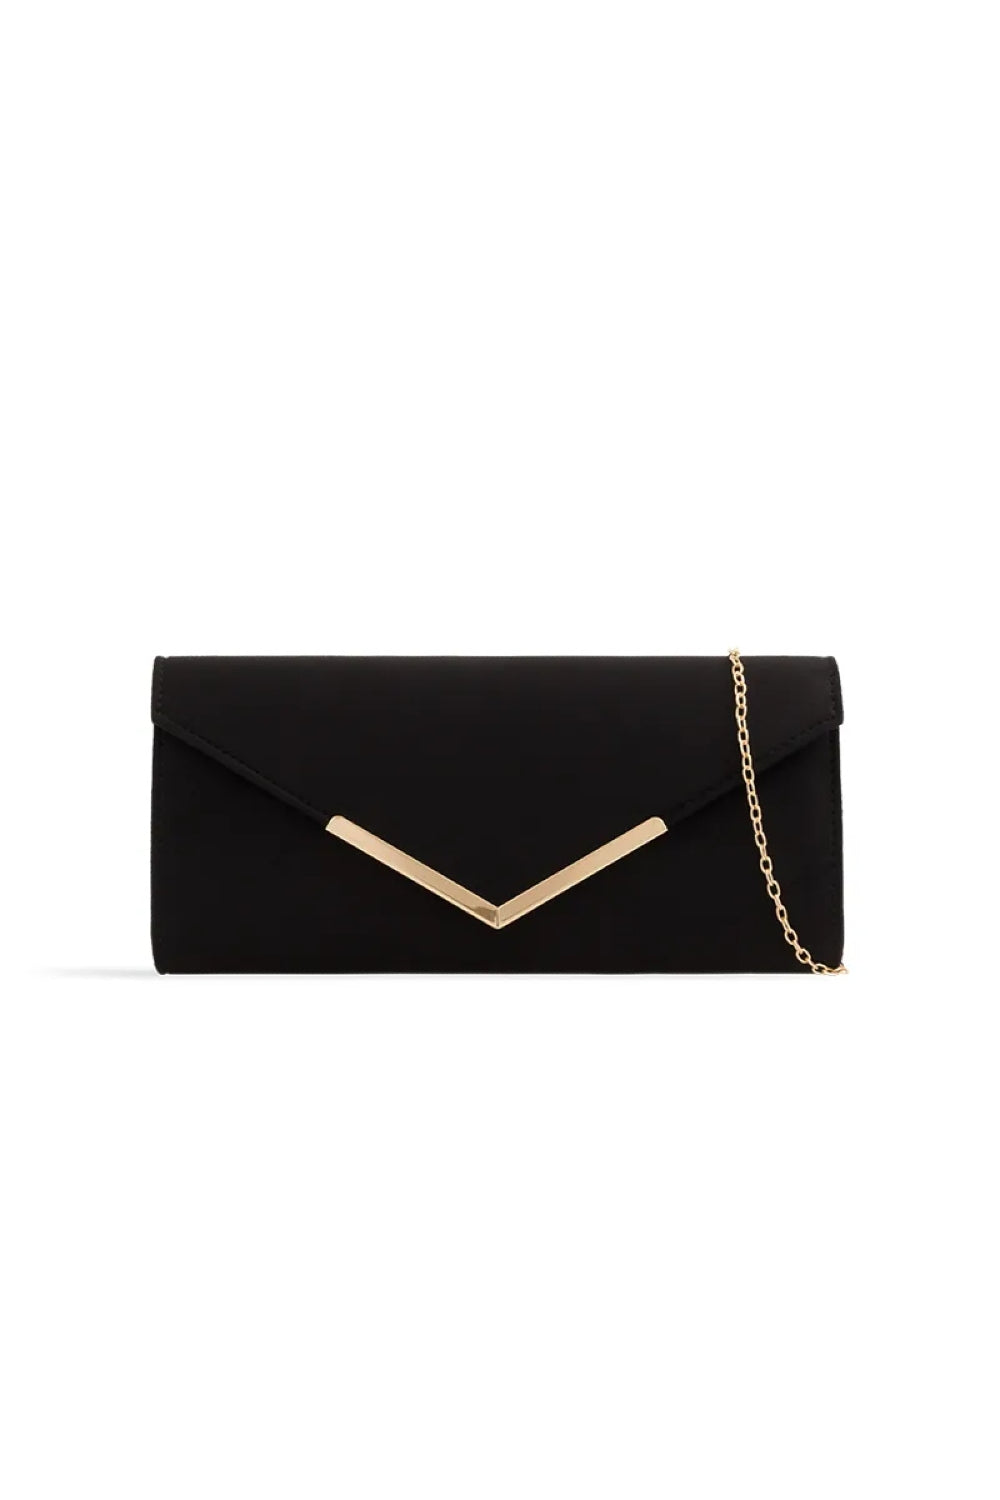 Black Suede Envelope Clutch Bag ALL2435